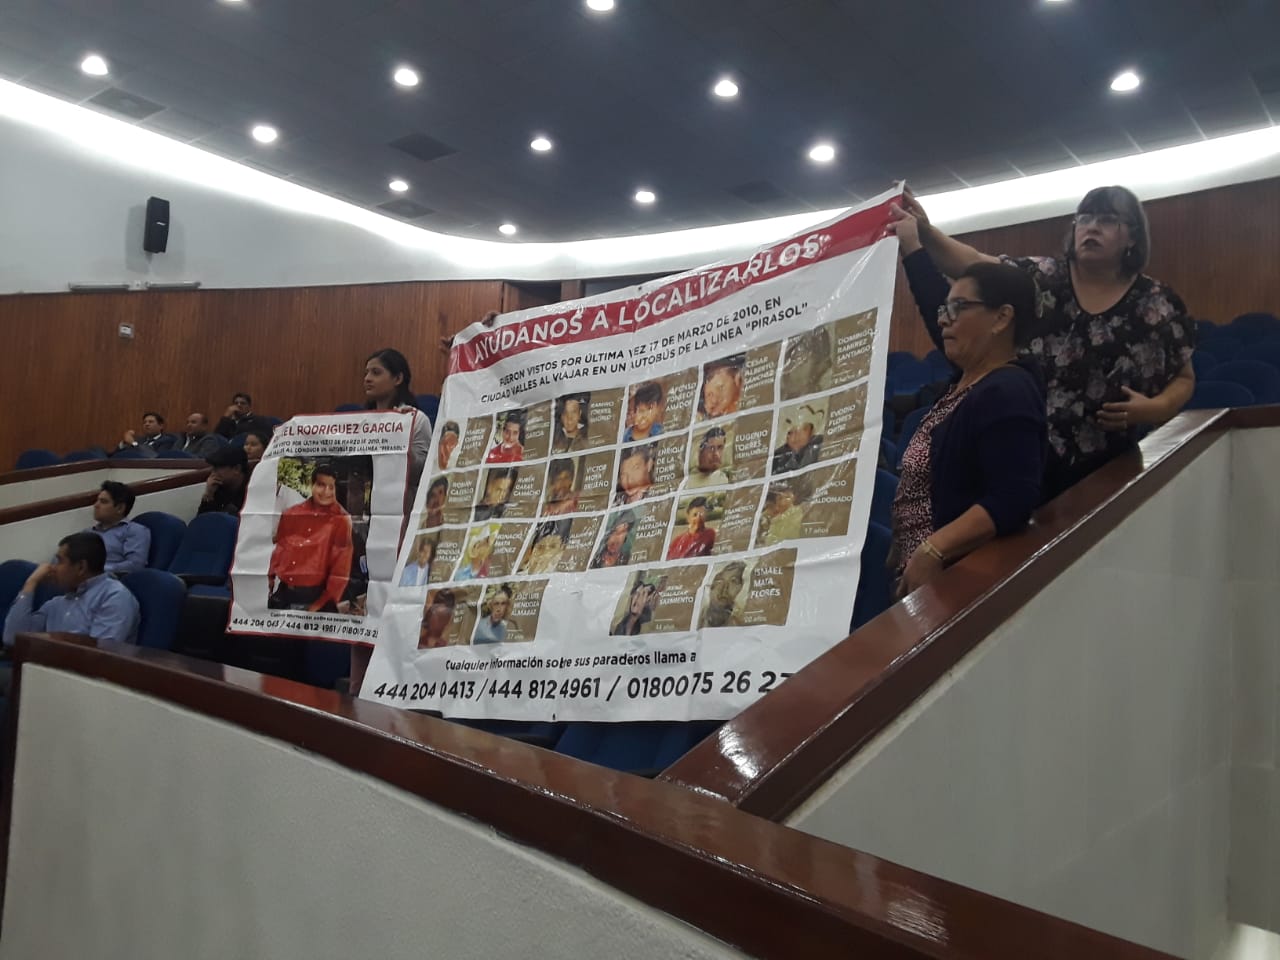  Familiares de desaparecidos apoyan iniciativa para declarar su ausencia y recuperar sus bienes